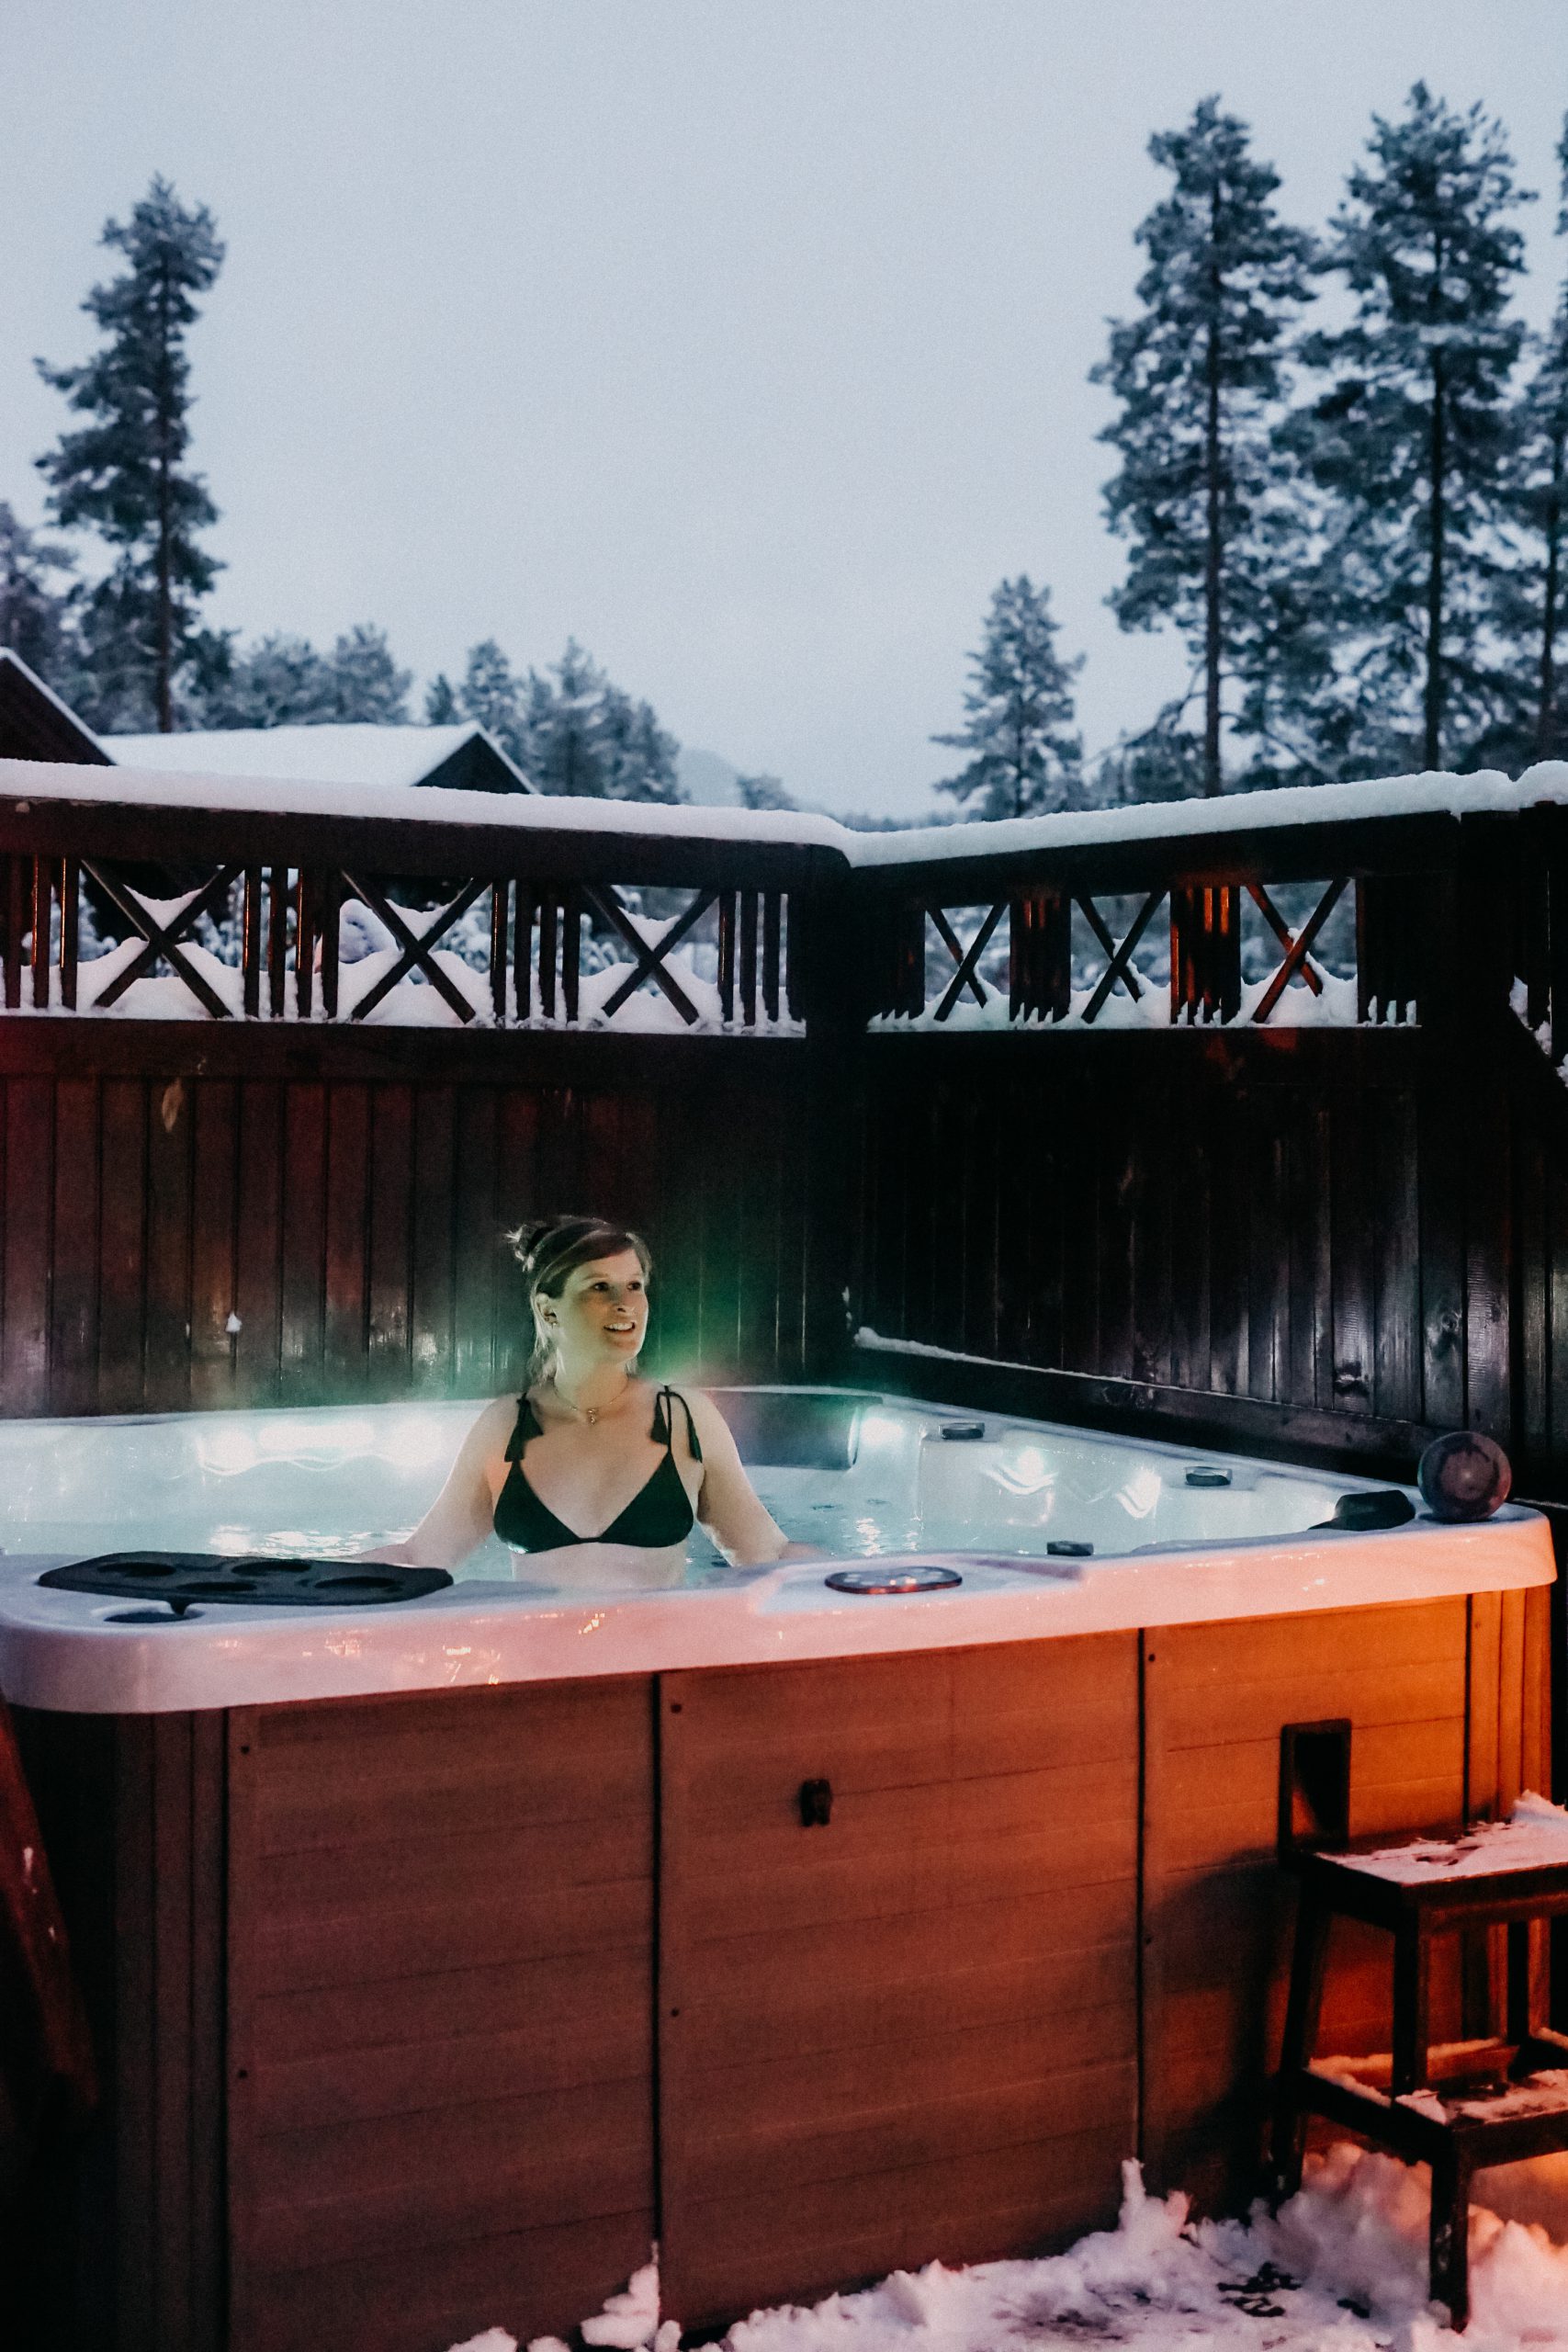 Airbnb Hütte Unterkunft Norwegen Telemark Holzhütte Whirlpool Norwegen Winterurlaub Winterroute Auto Reiseblog Reisen mit Hund Tipps 6